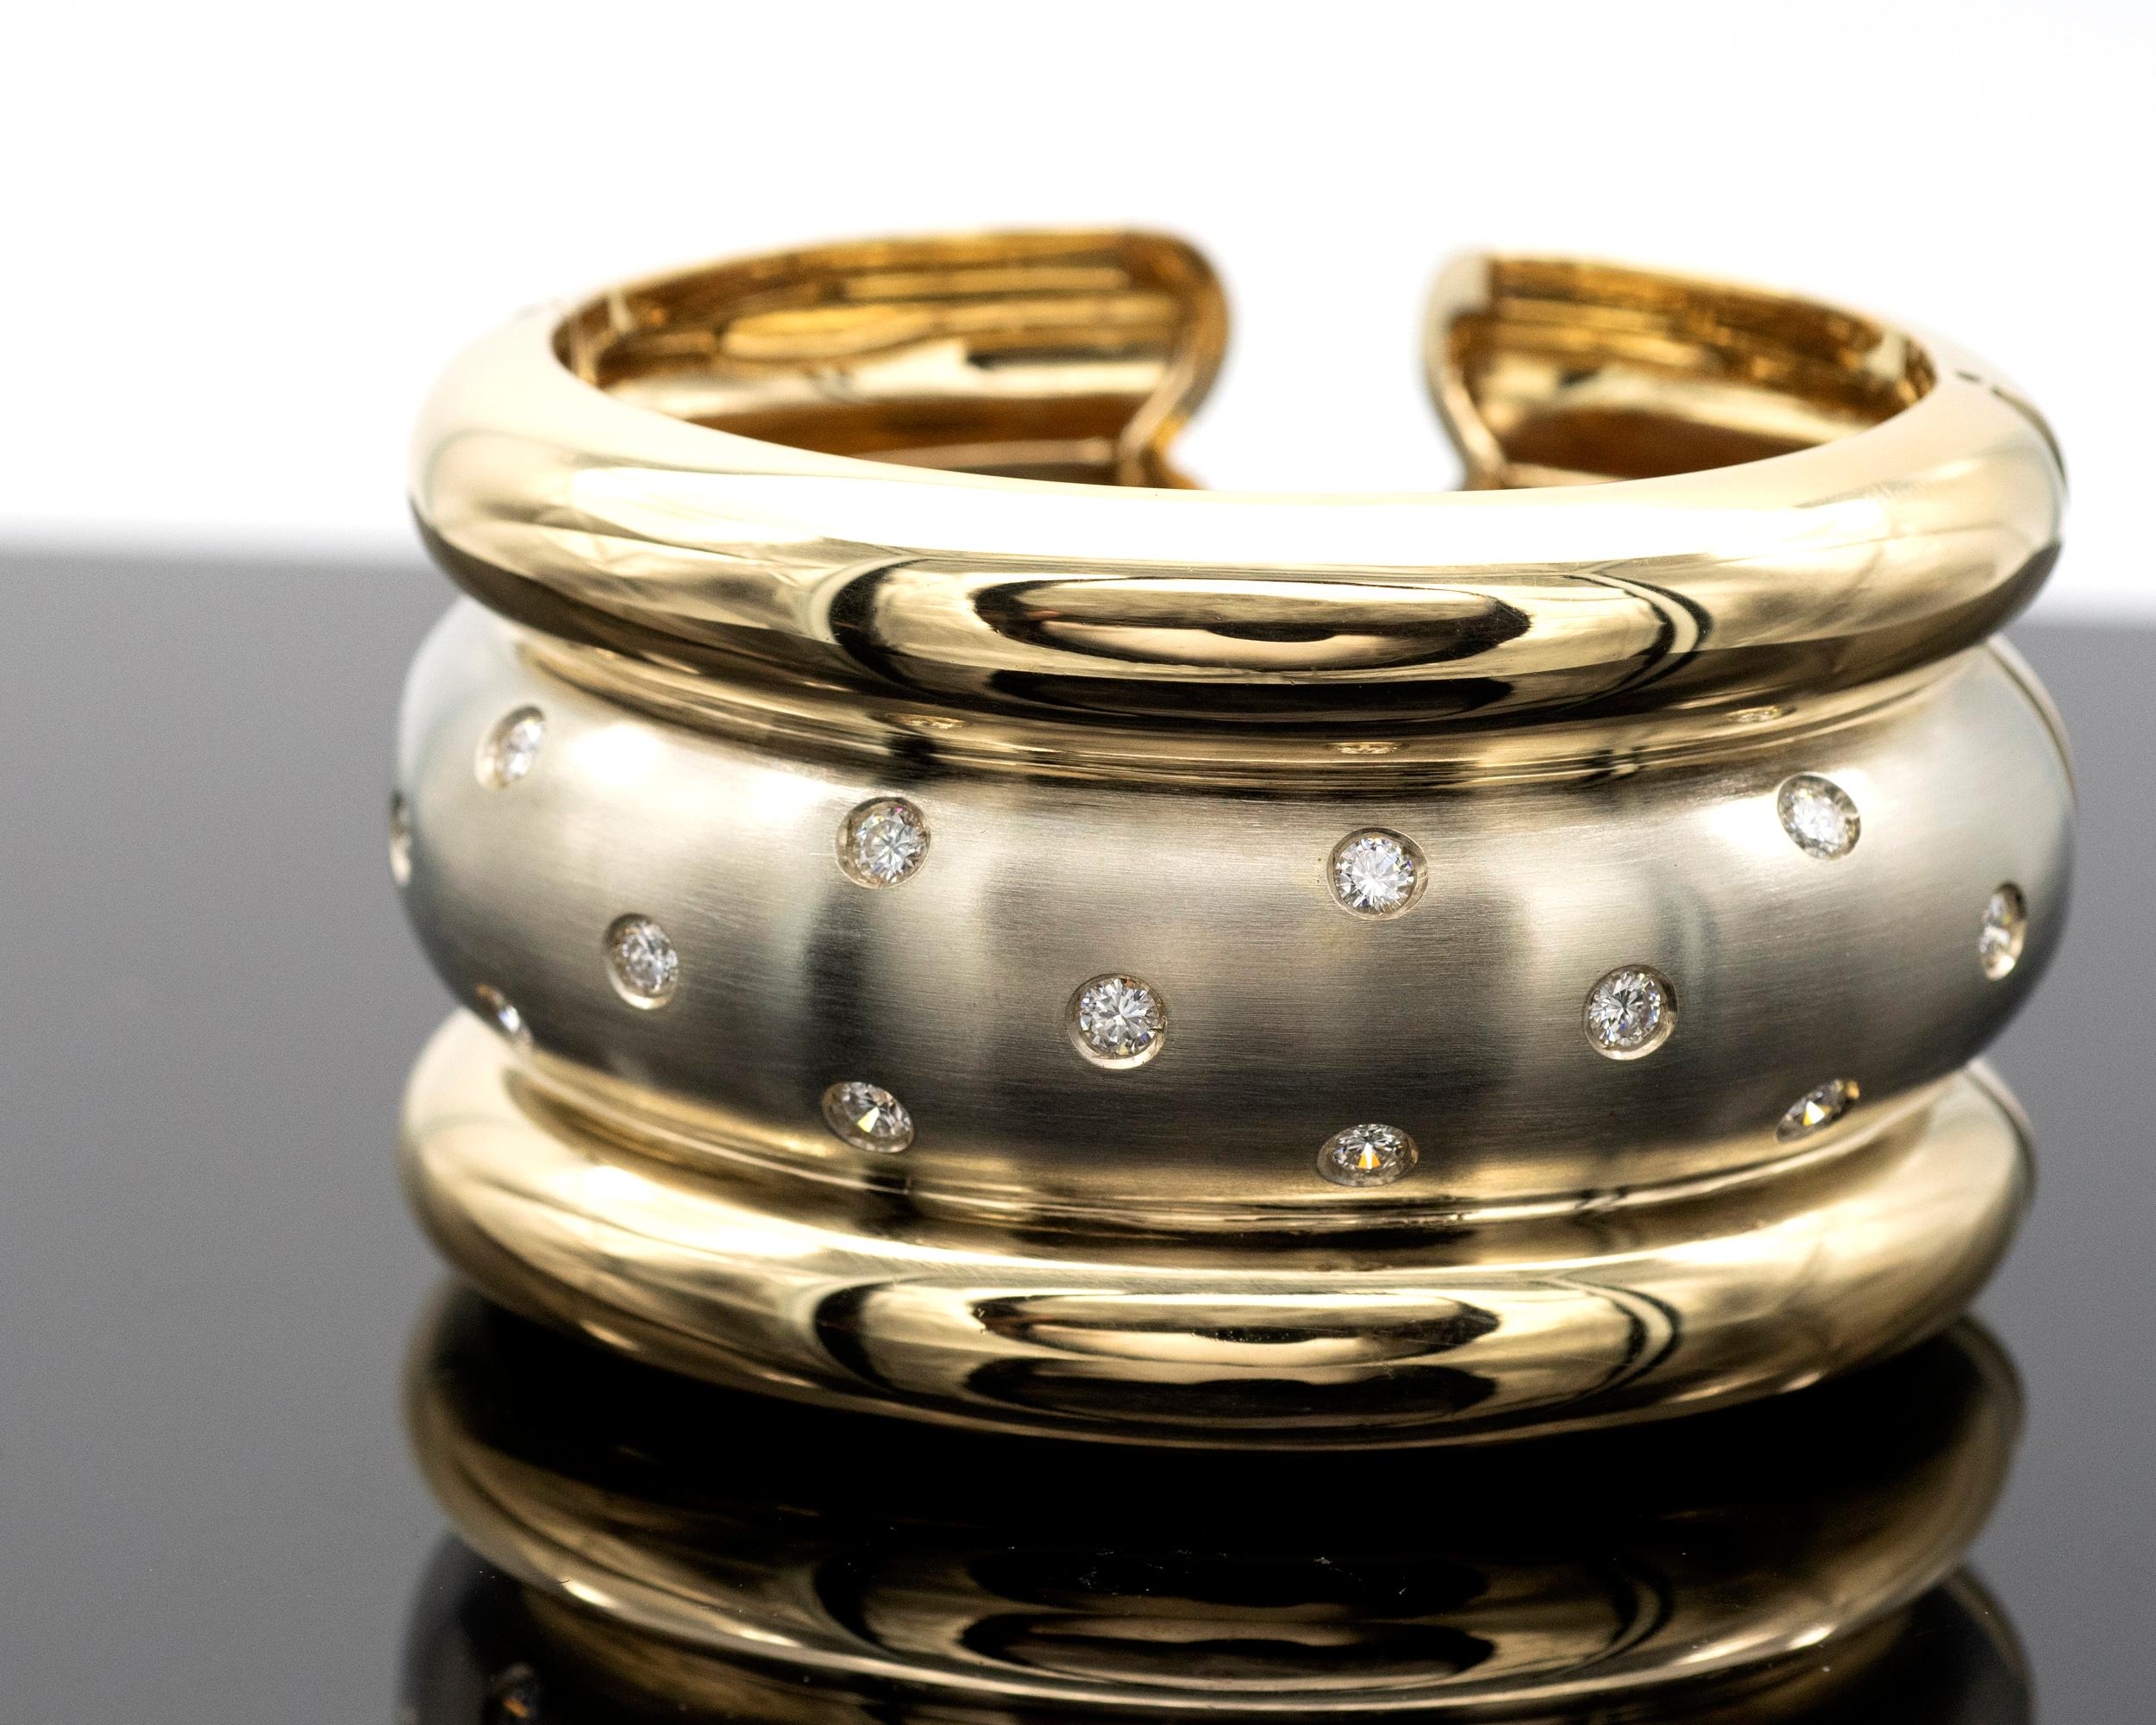 Magnifique bracelet manchette moderne à deux tons. La partie centrale est en or blanc satiné serti de diamants, entourée de deux bandes d'or jaune brillant. Le contraste qui en résulte est très élégant. 
La marque est excellente 

Diamants : 15